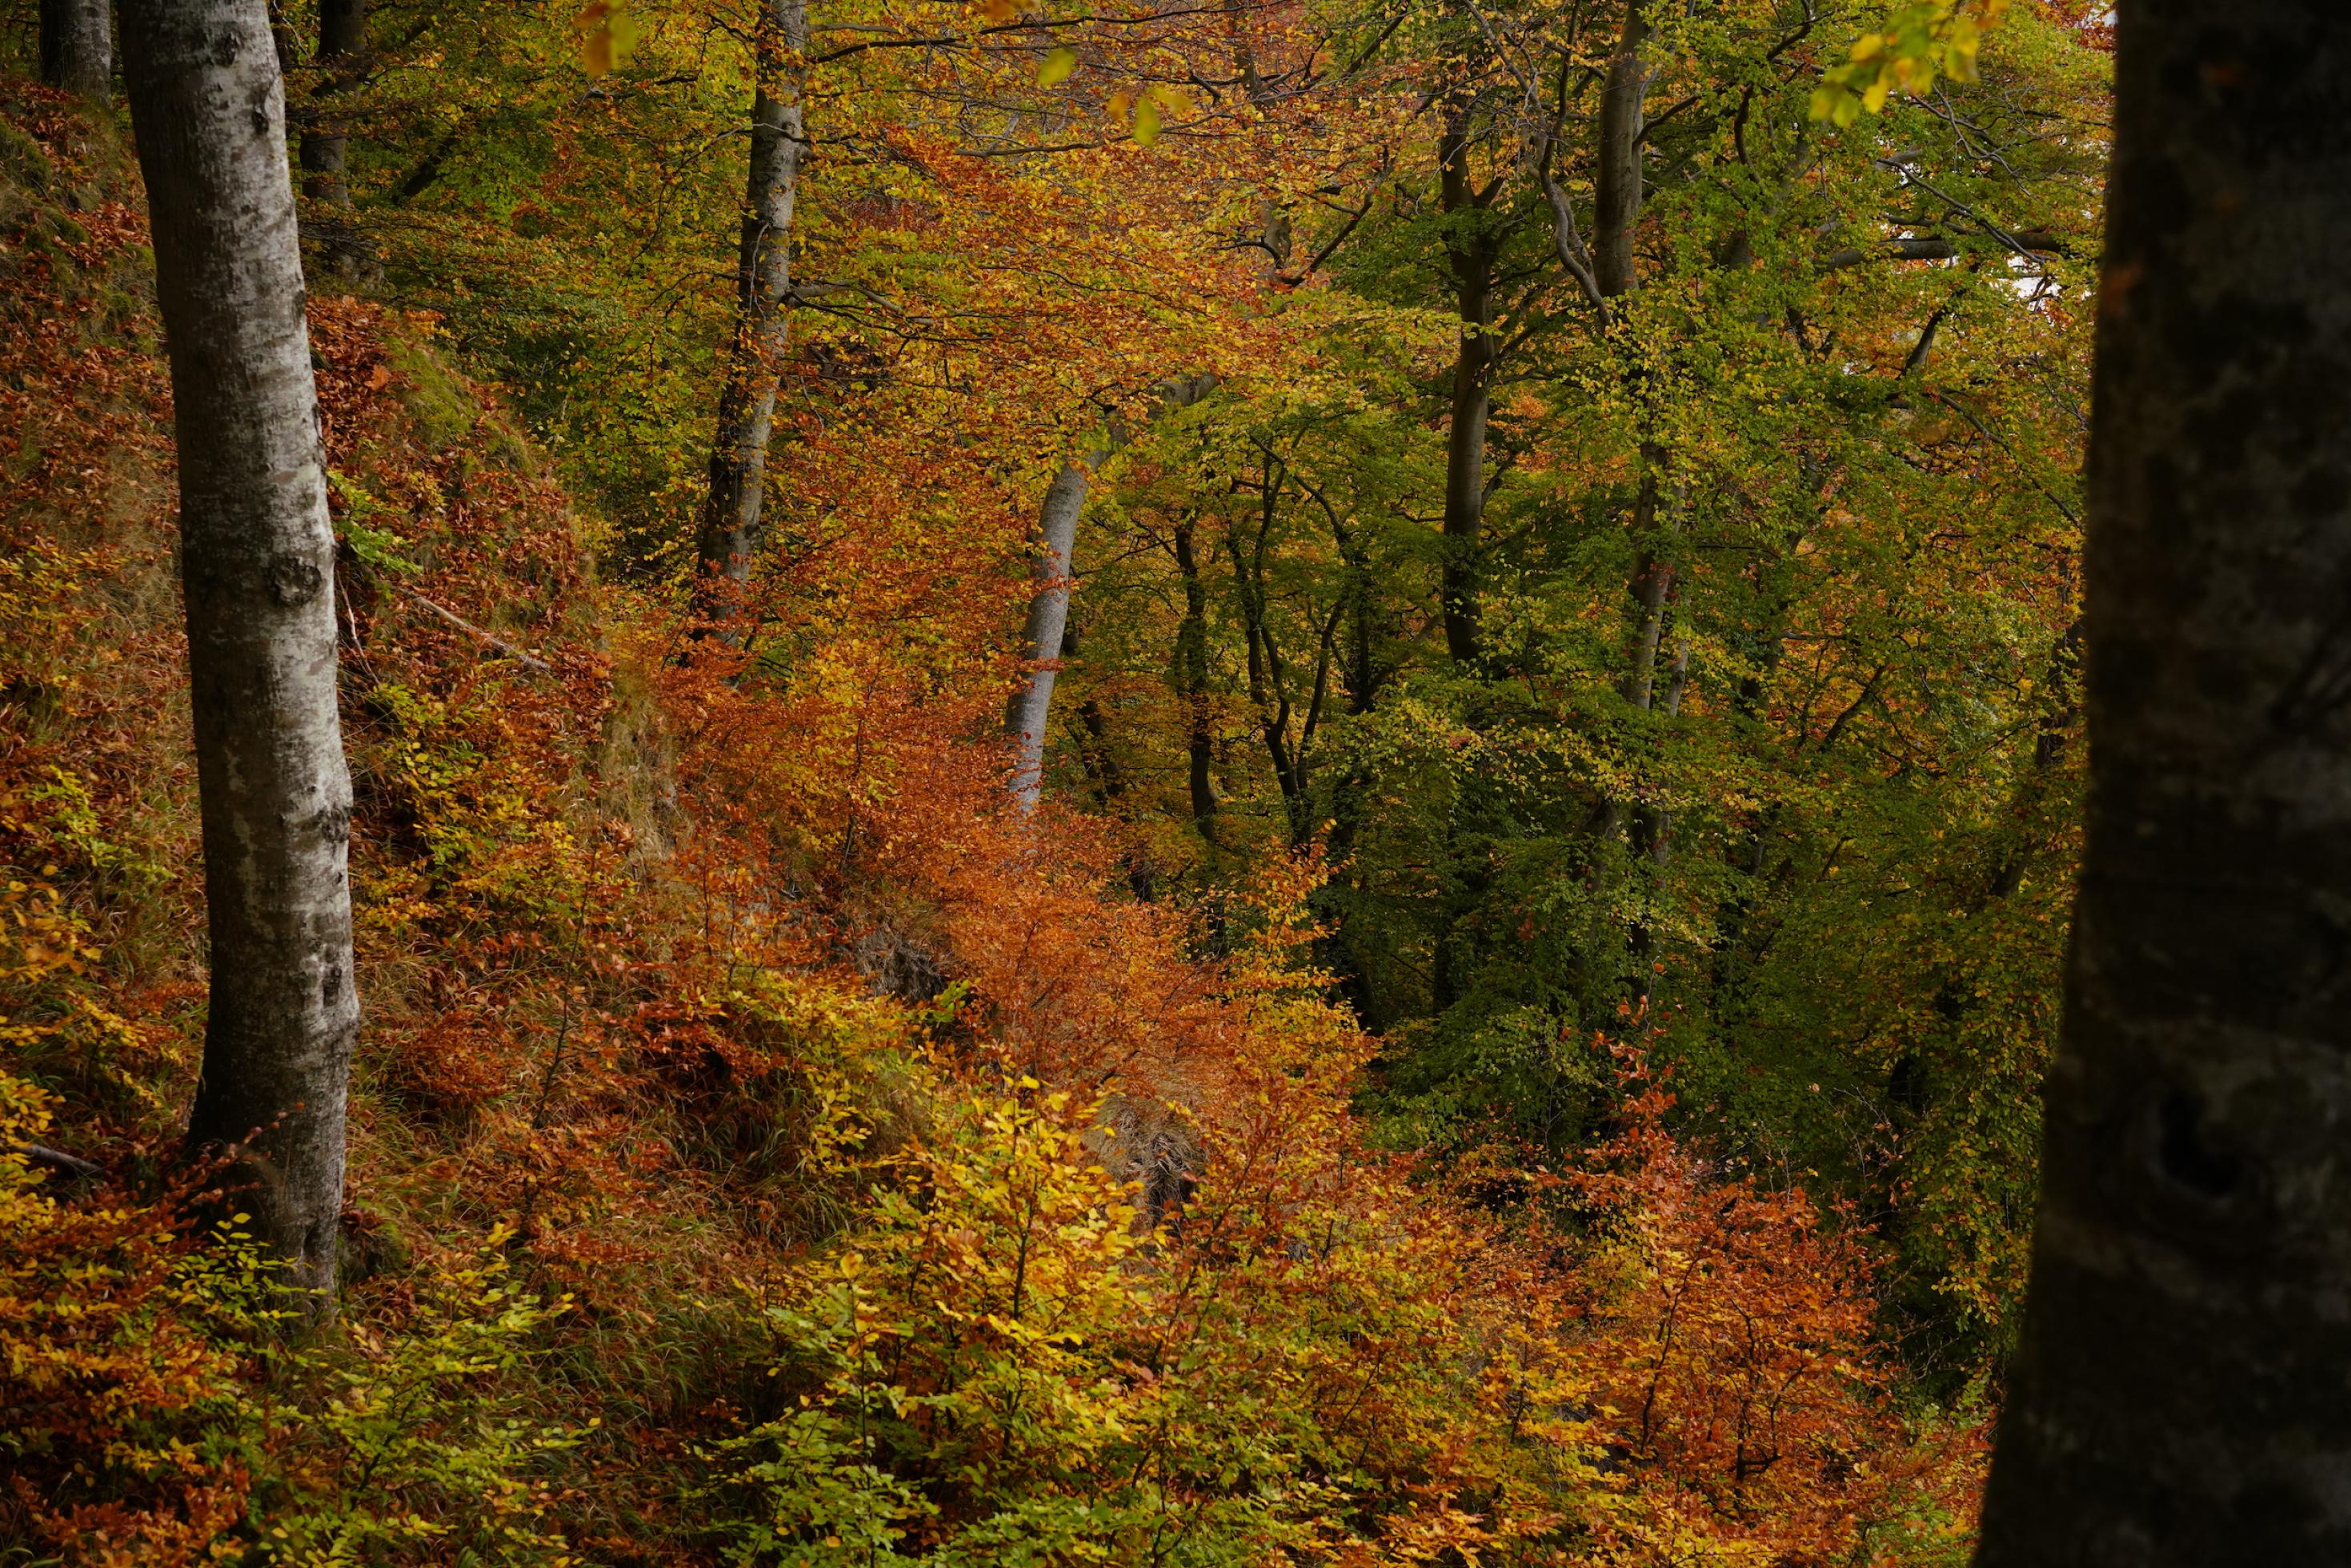 Herbstlicher Buchenwald mit Bäumen verschiedenen Alters, an einem Hang gelegen